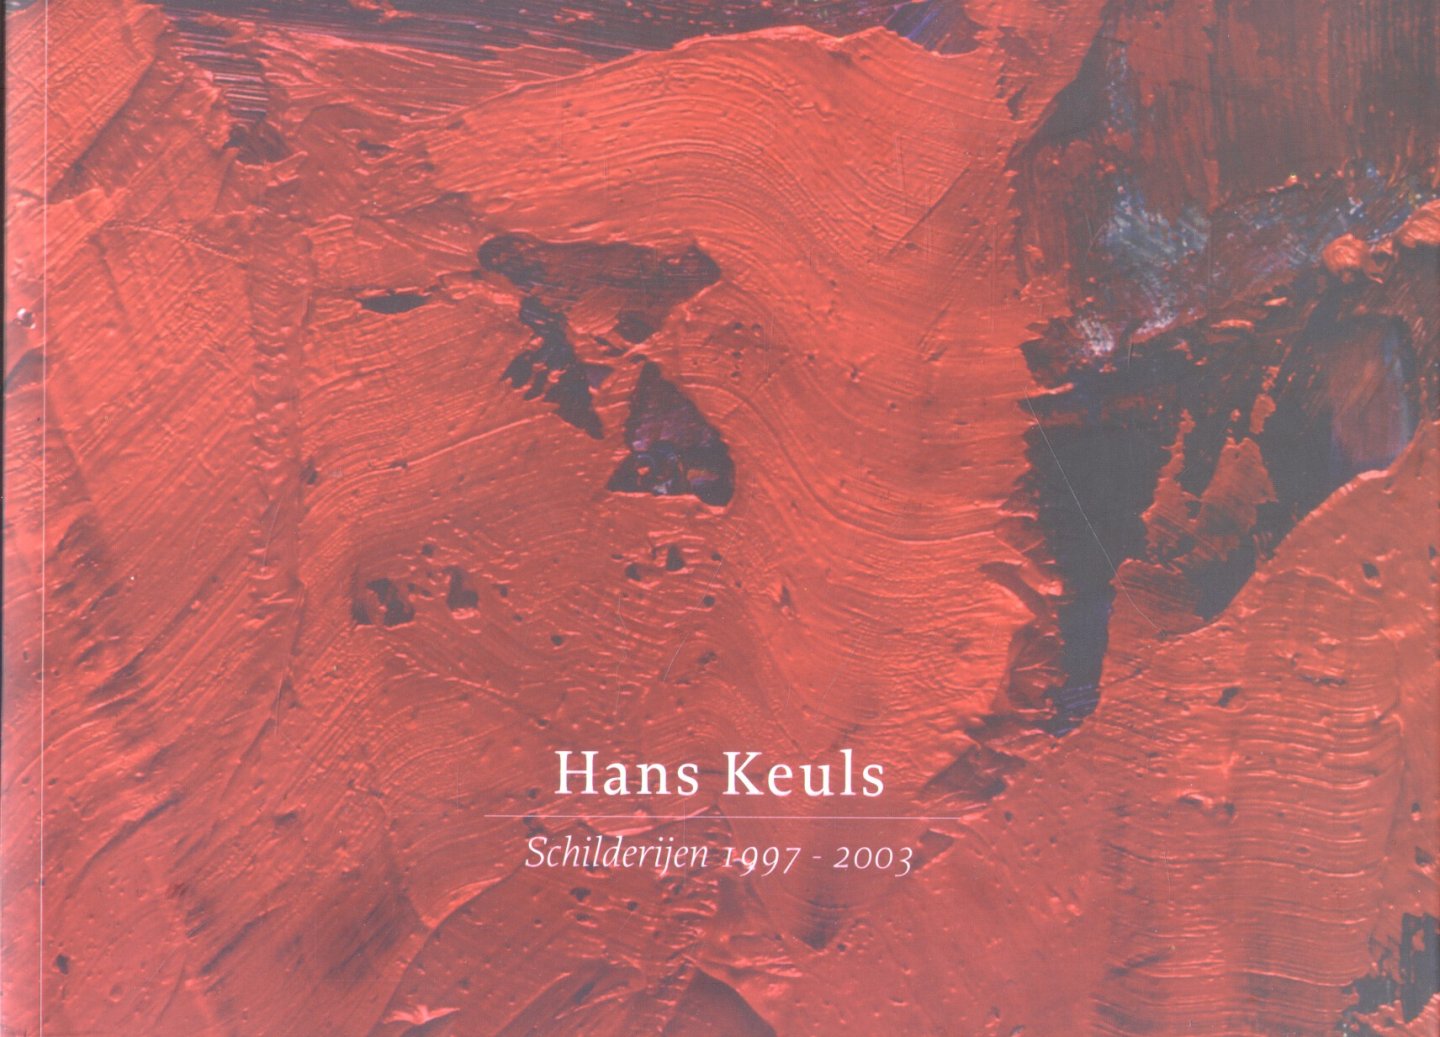 Maas, Nicolette (tekst en redactie) - Hans Keuls (Schilderijen 1997 - 2003). Gesigneerd!